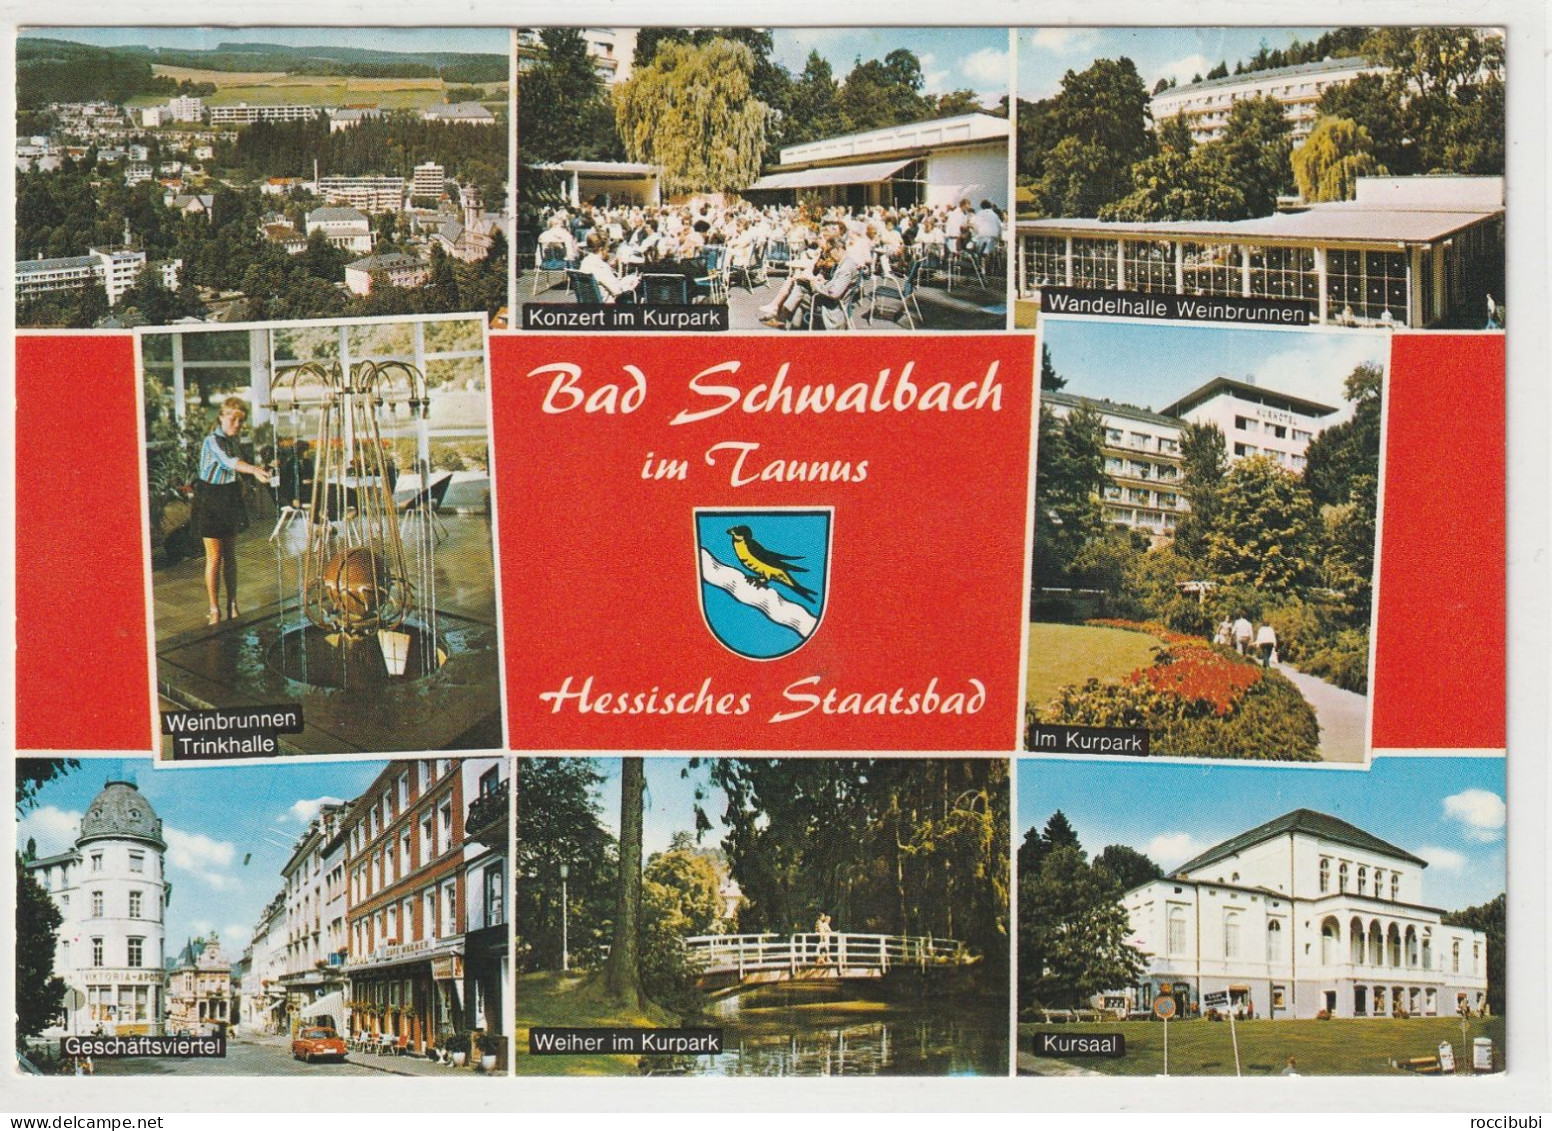 Bad Schwalbach, Hessen - Bad Schwalbach